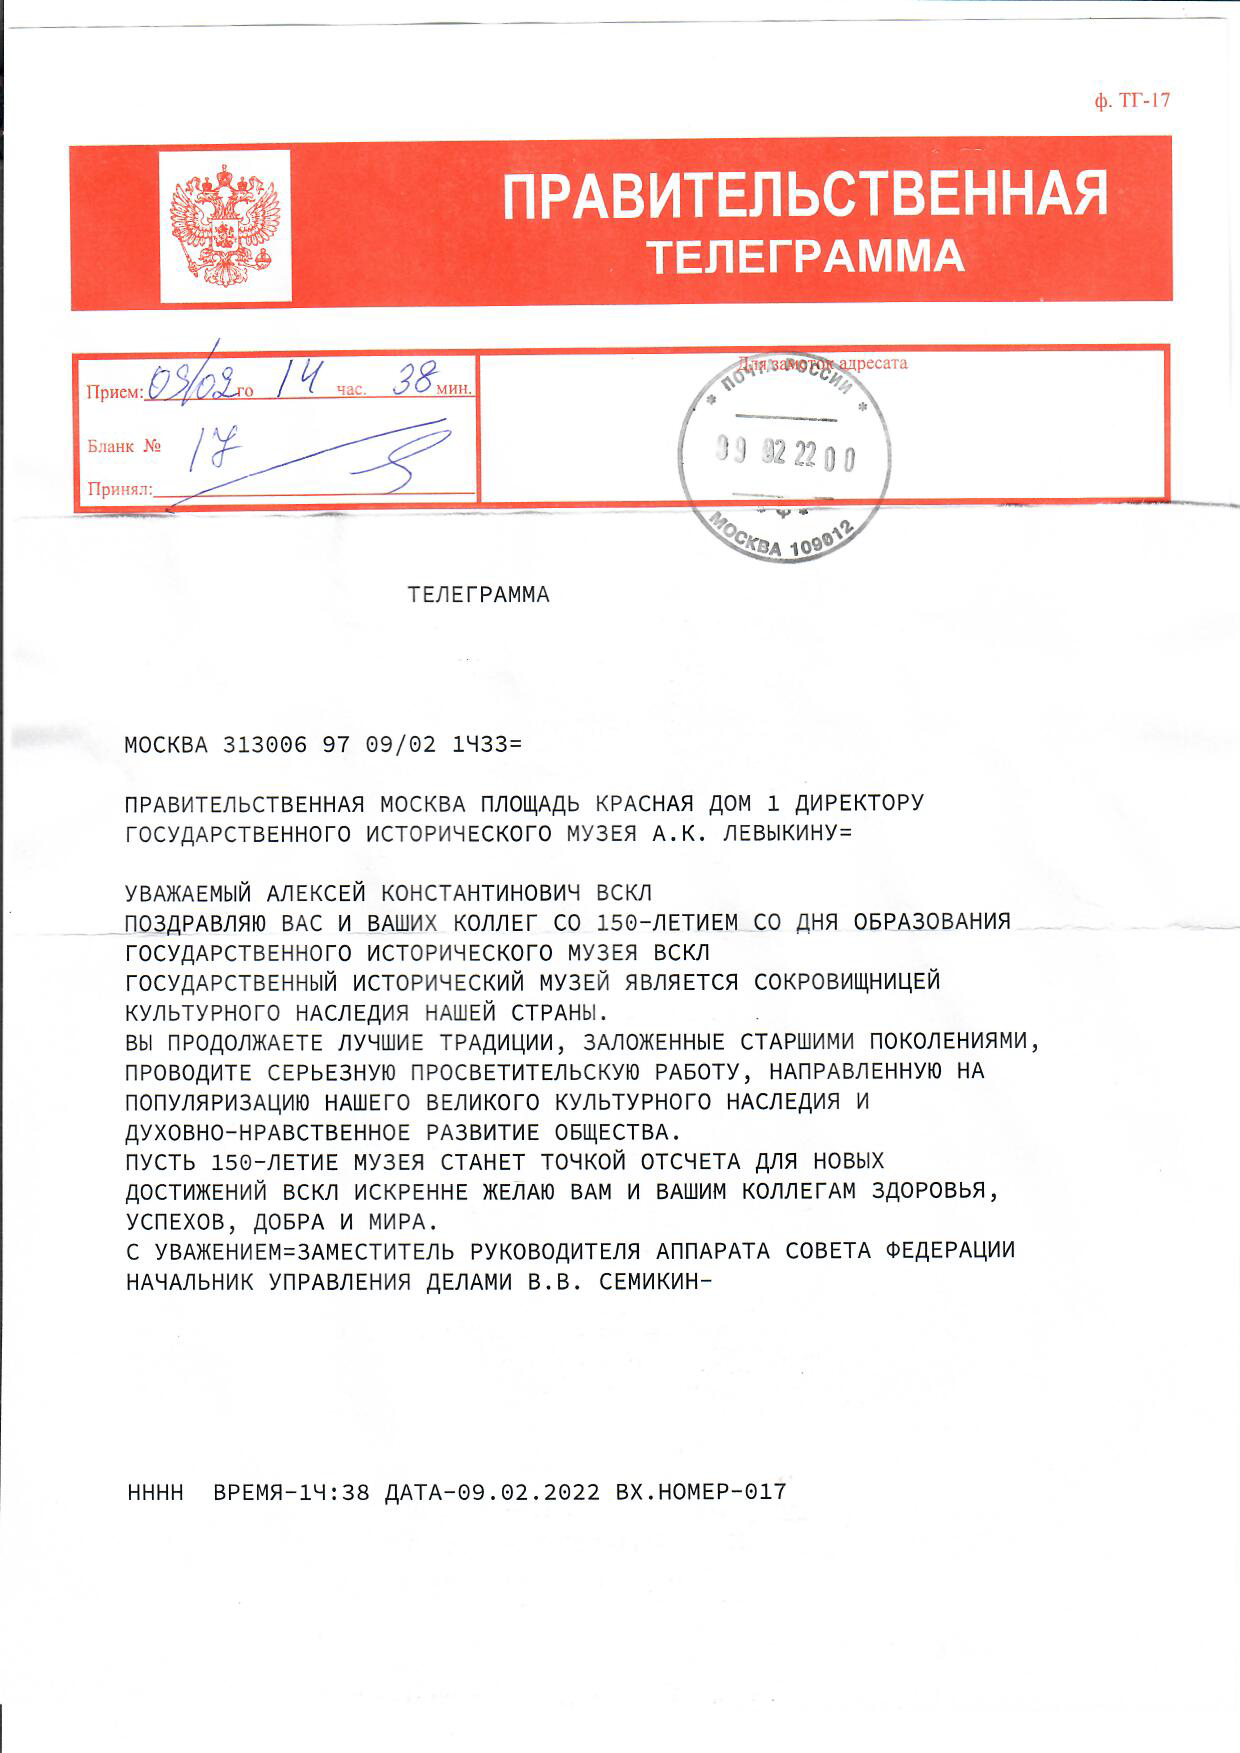 Телеграмма от заместителя руководителя аппарата Совета Федерации Семикина В. В.